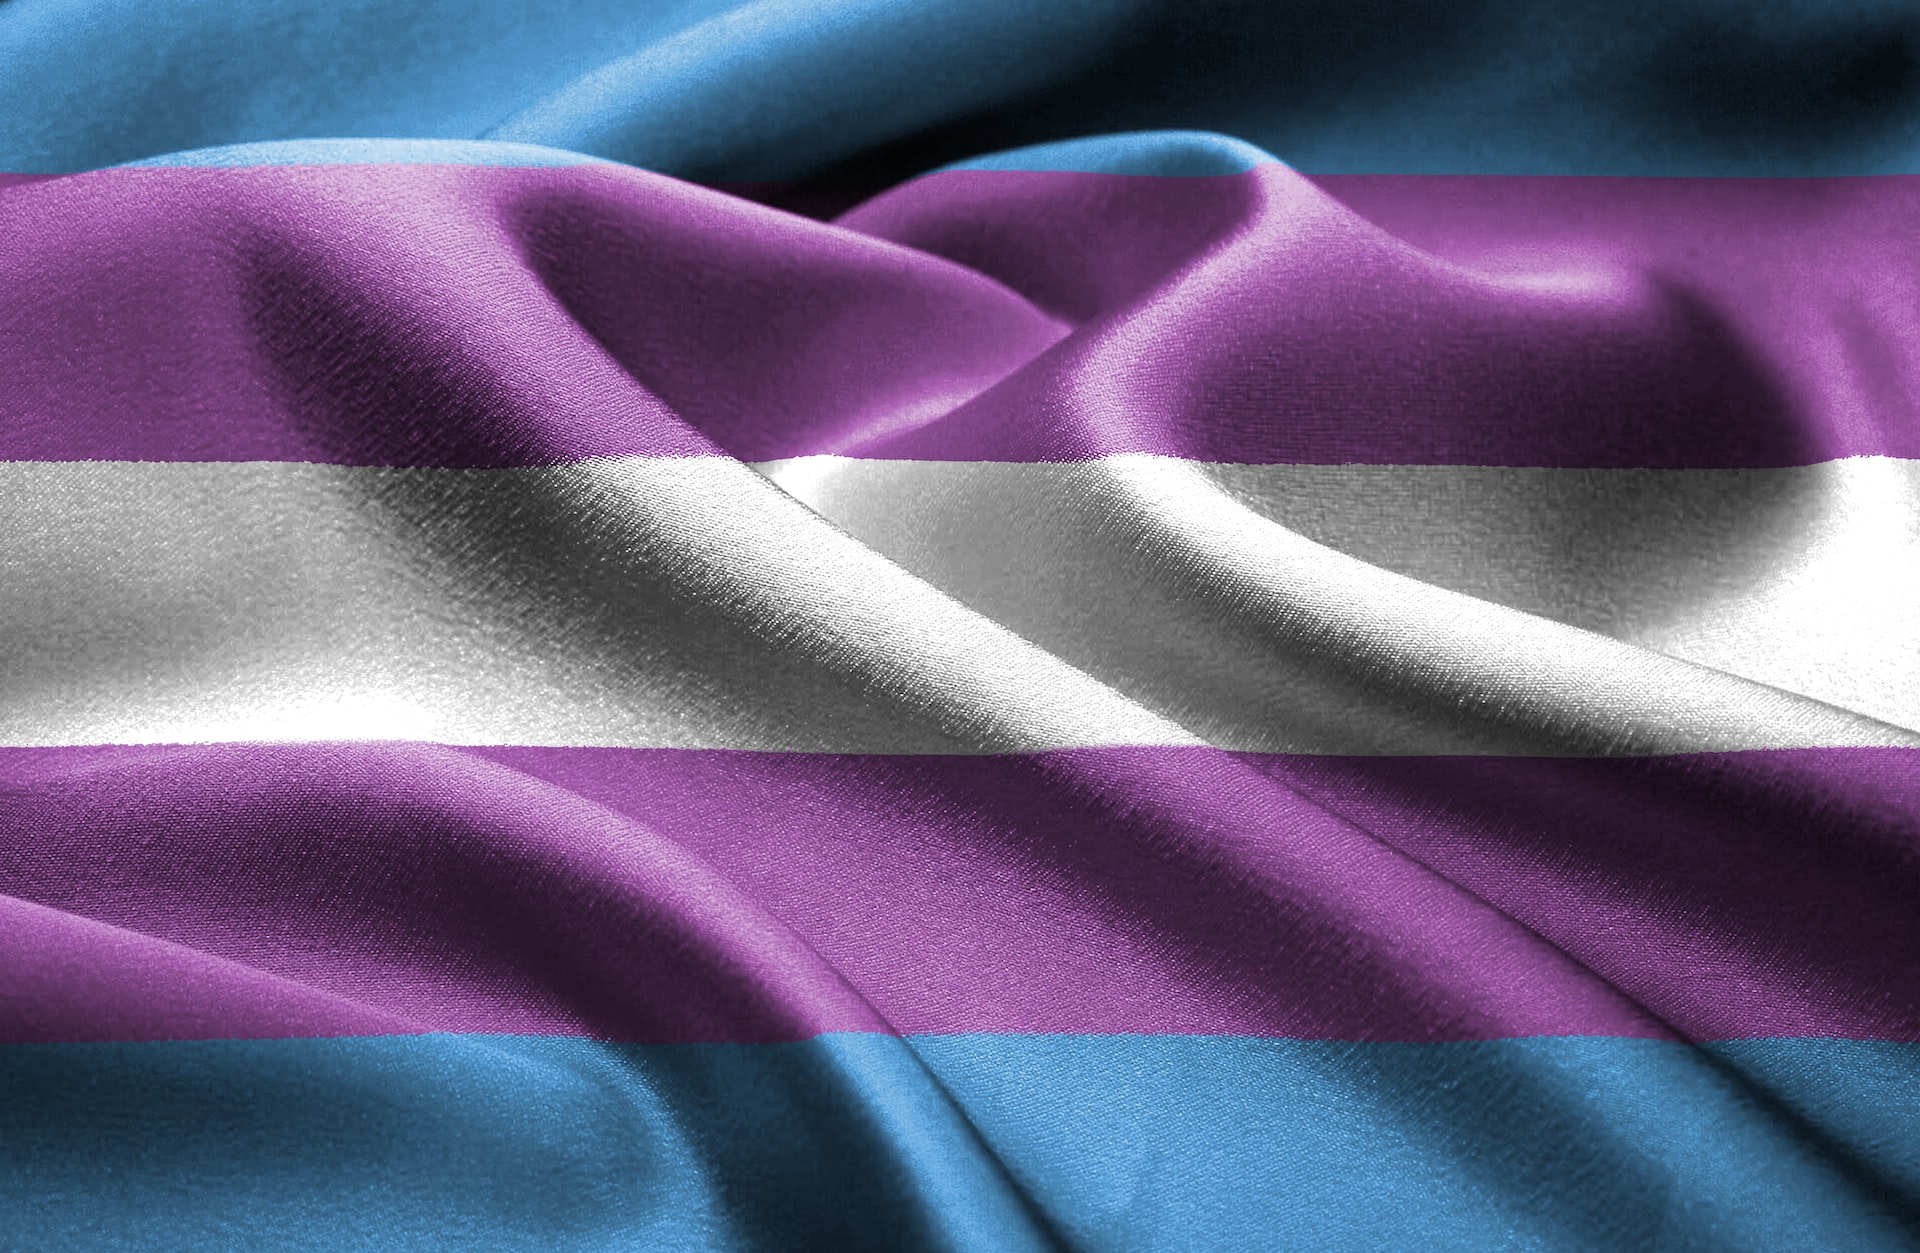 transgenderzorg in nederland